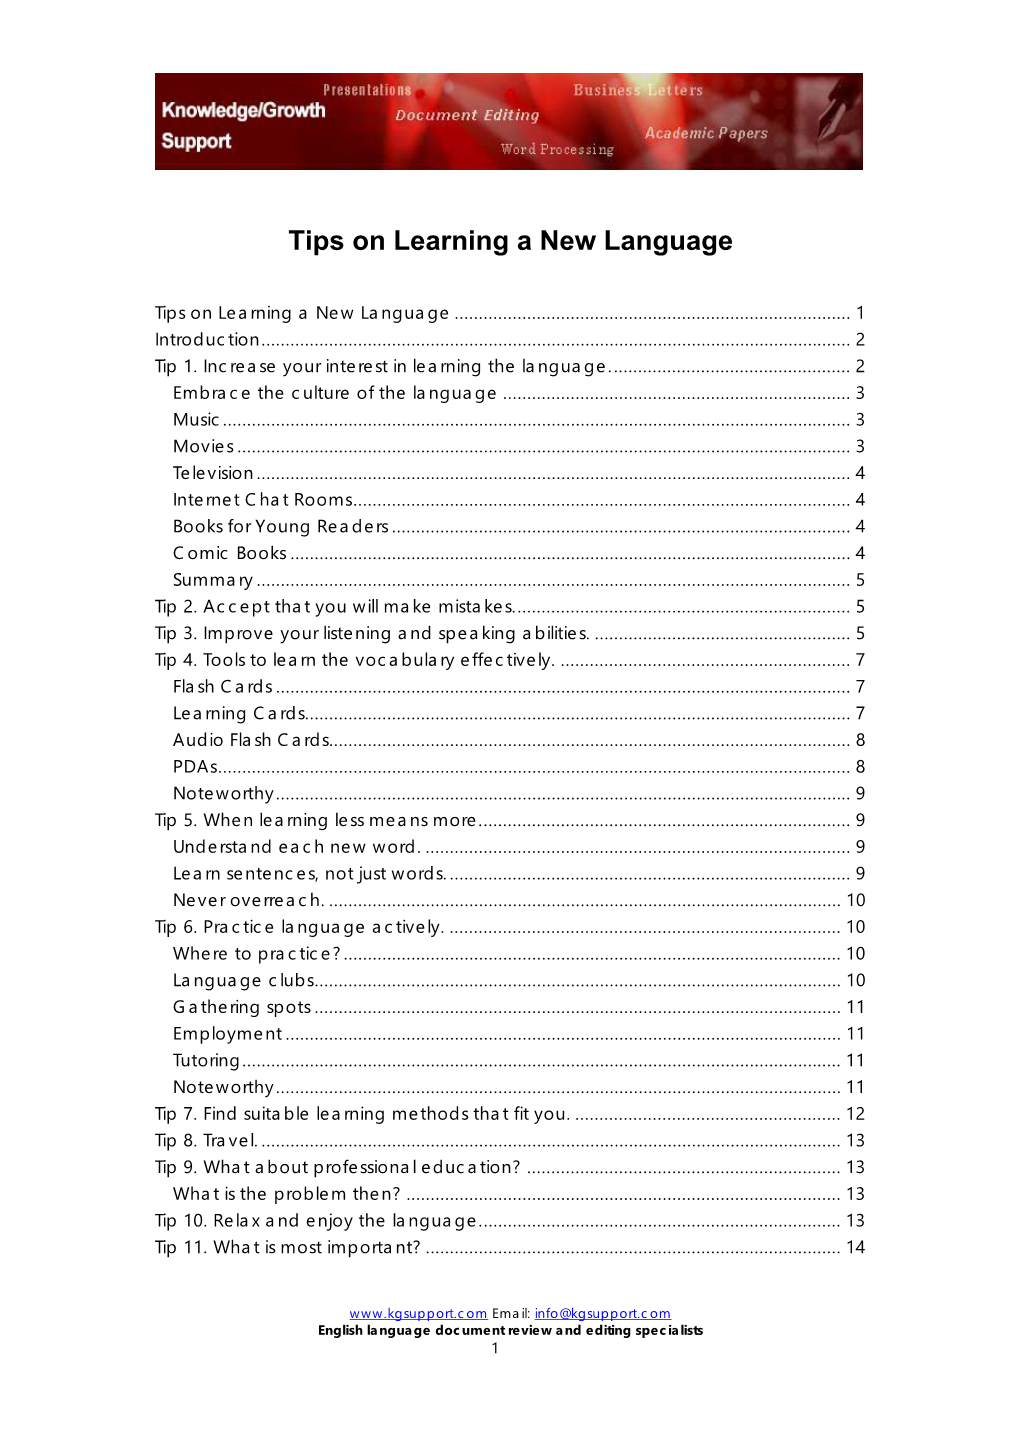 Tips on Learninga New Language